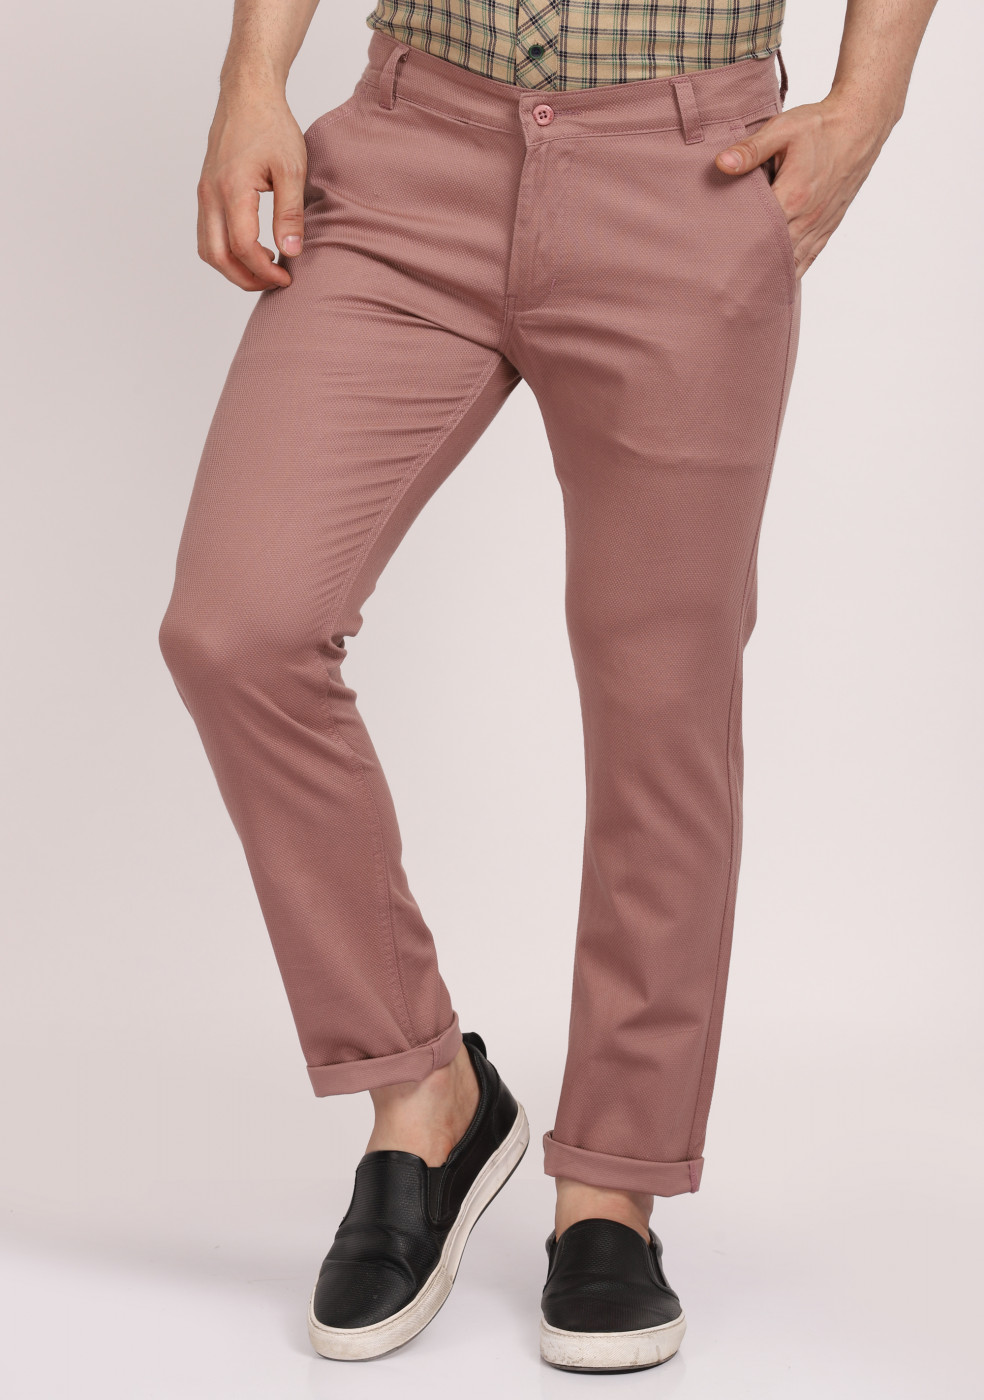 ASHTOM Casual Cotton Trouser Regular Fit For Men